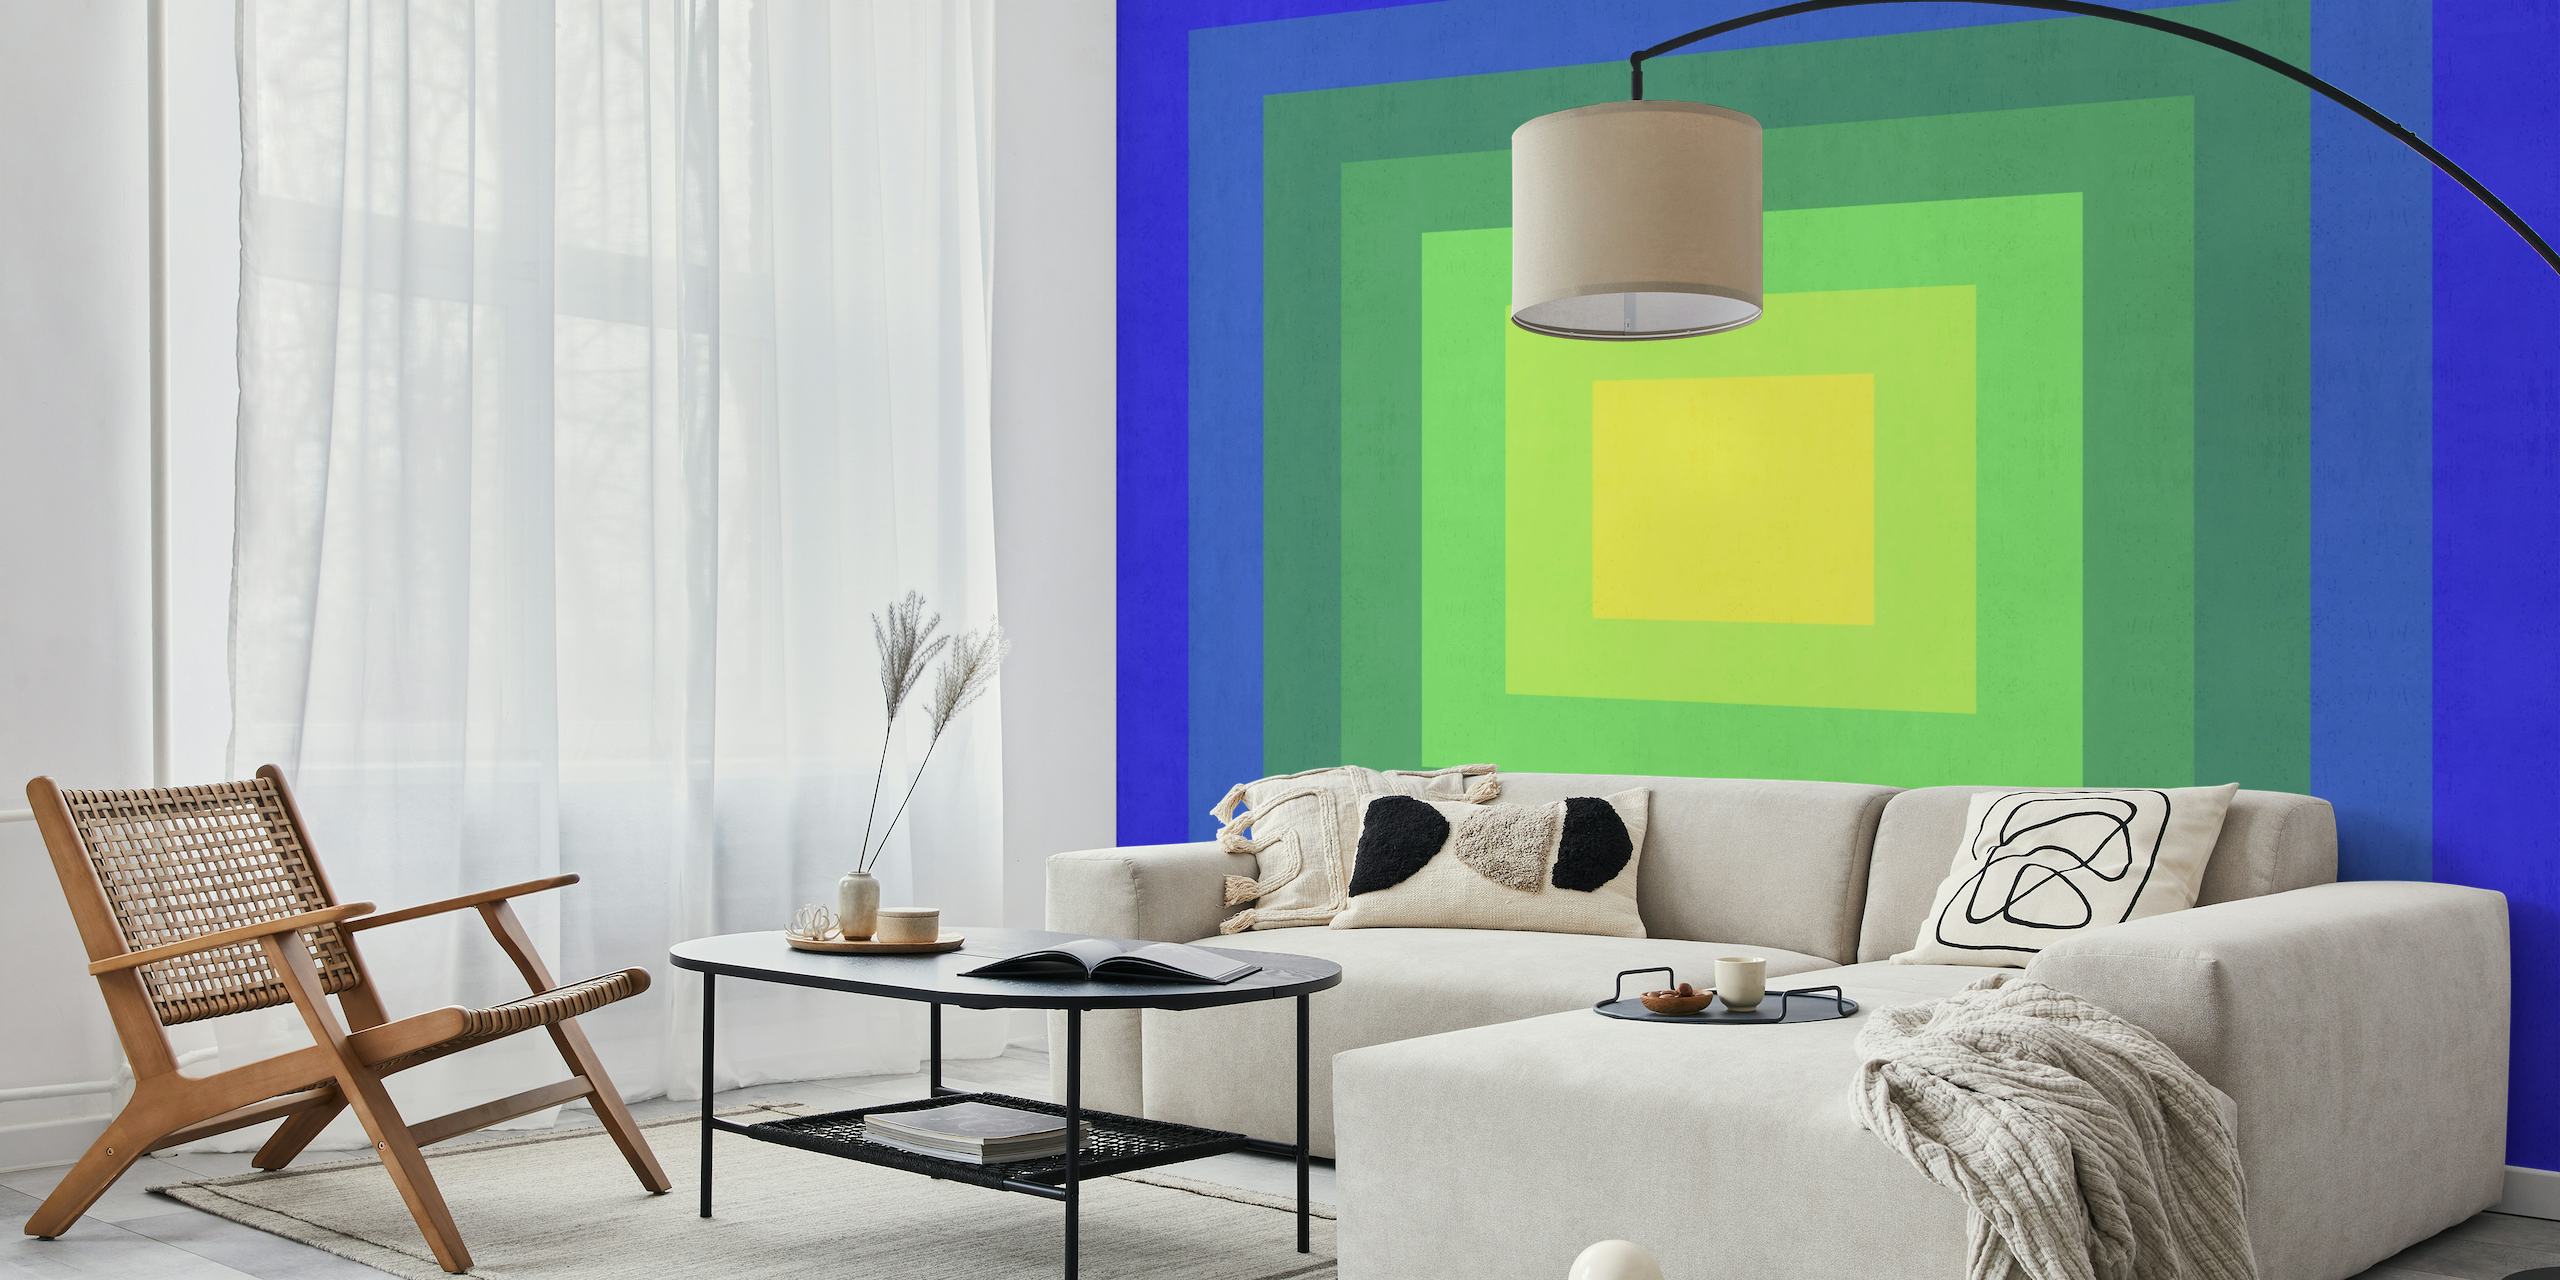 Vægmaleri af et abstrakt gradient tunneldesign med firkanter i blå til gule nuancer.